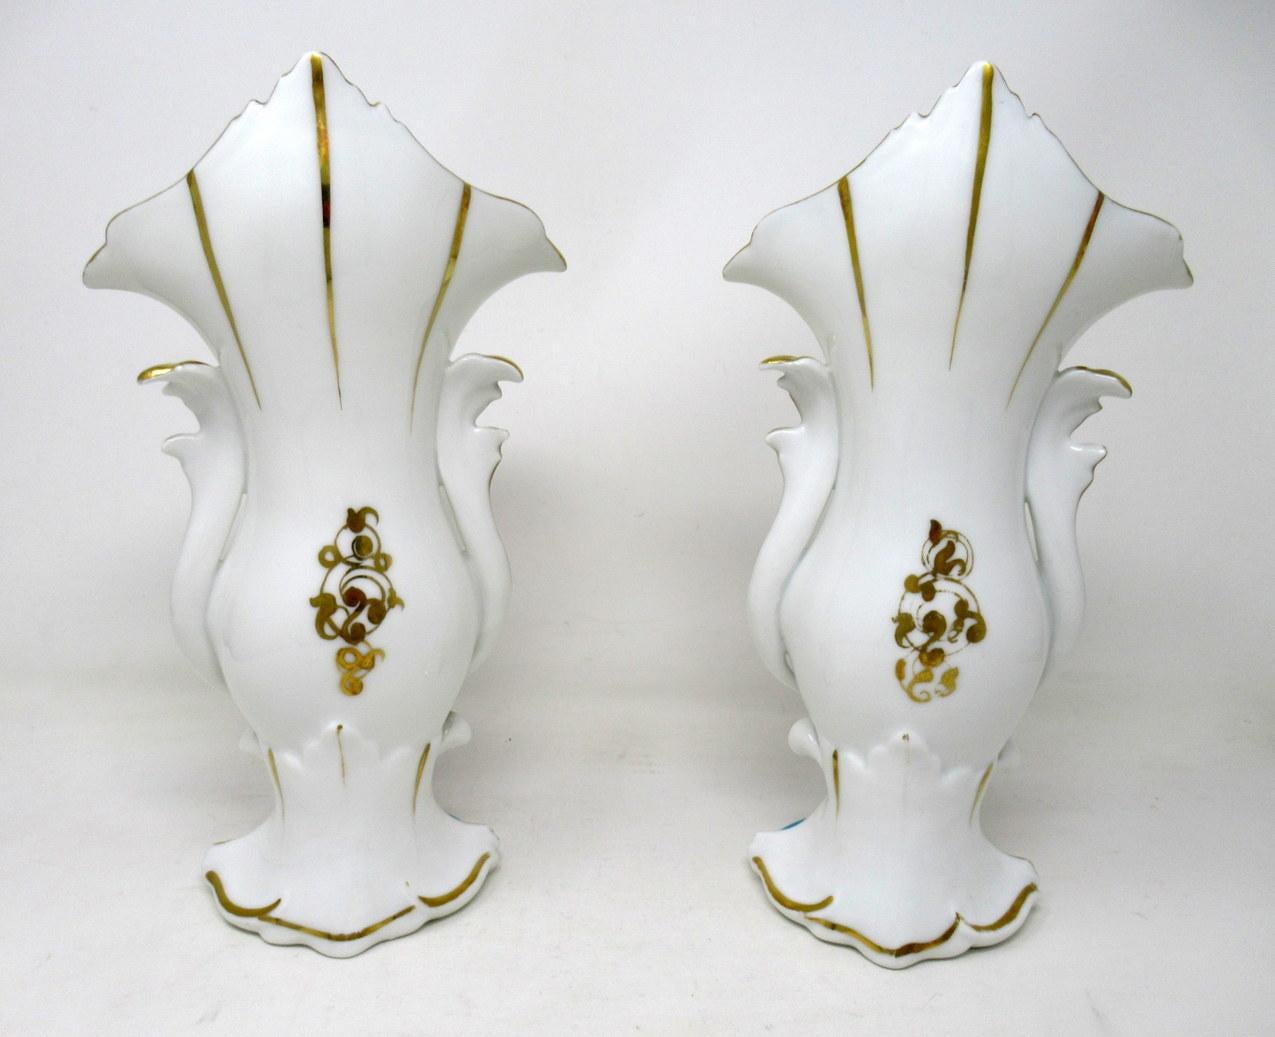 Antique French Vieux Paris Gilt Porcelain Vases Urns Flowers Sèvres Style, Pair 1